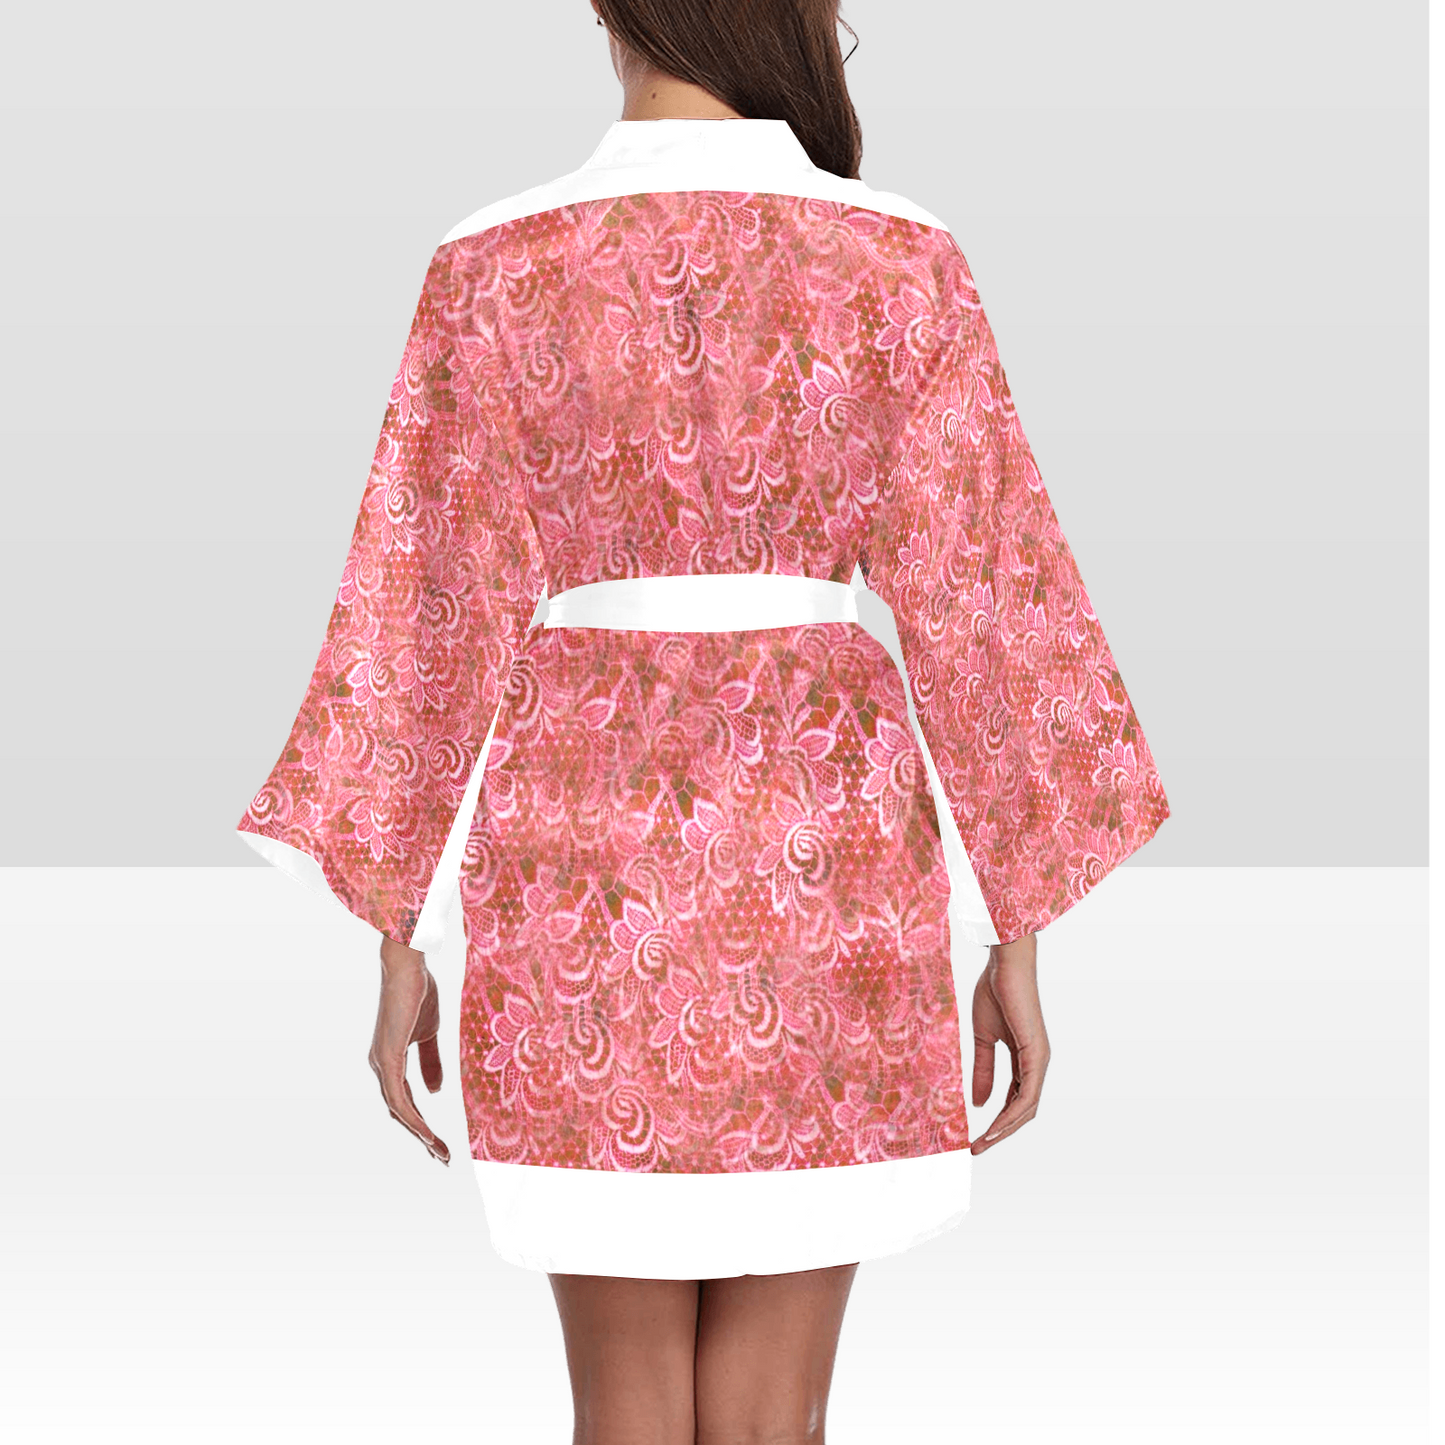 Victorian Lace Kimono Robe, Black or White Trim, Sizes XS to 2XL, Design 33